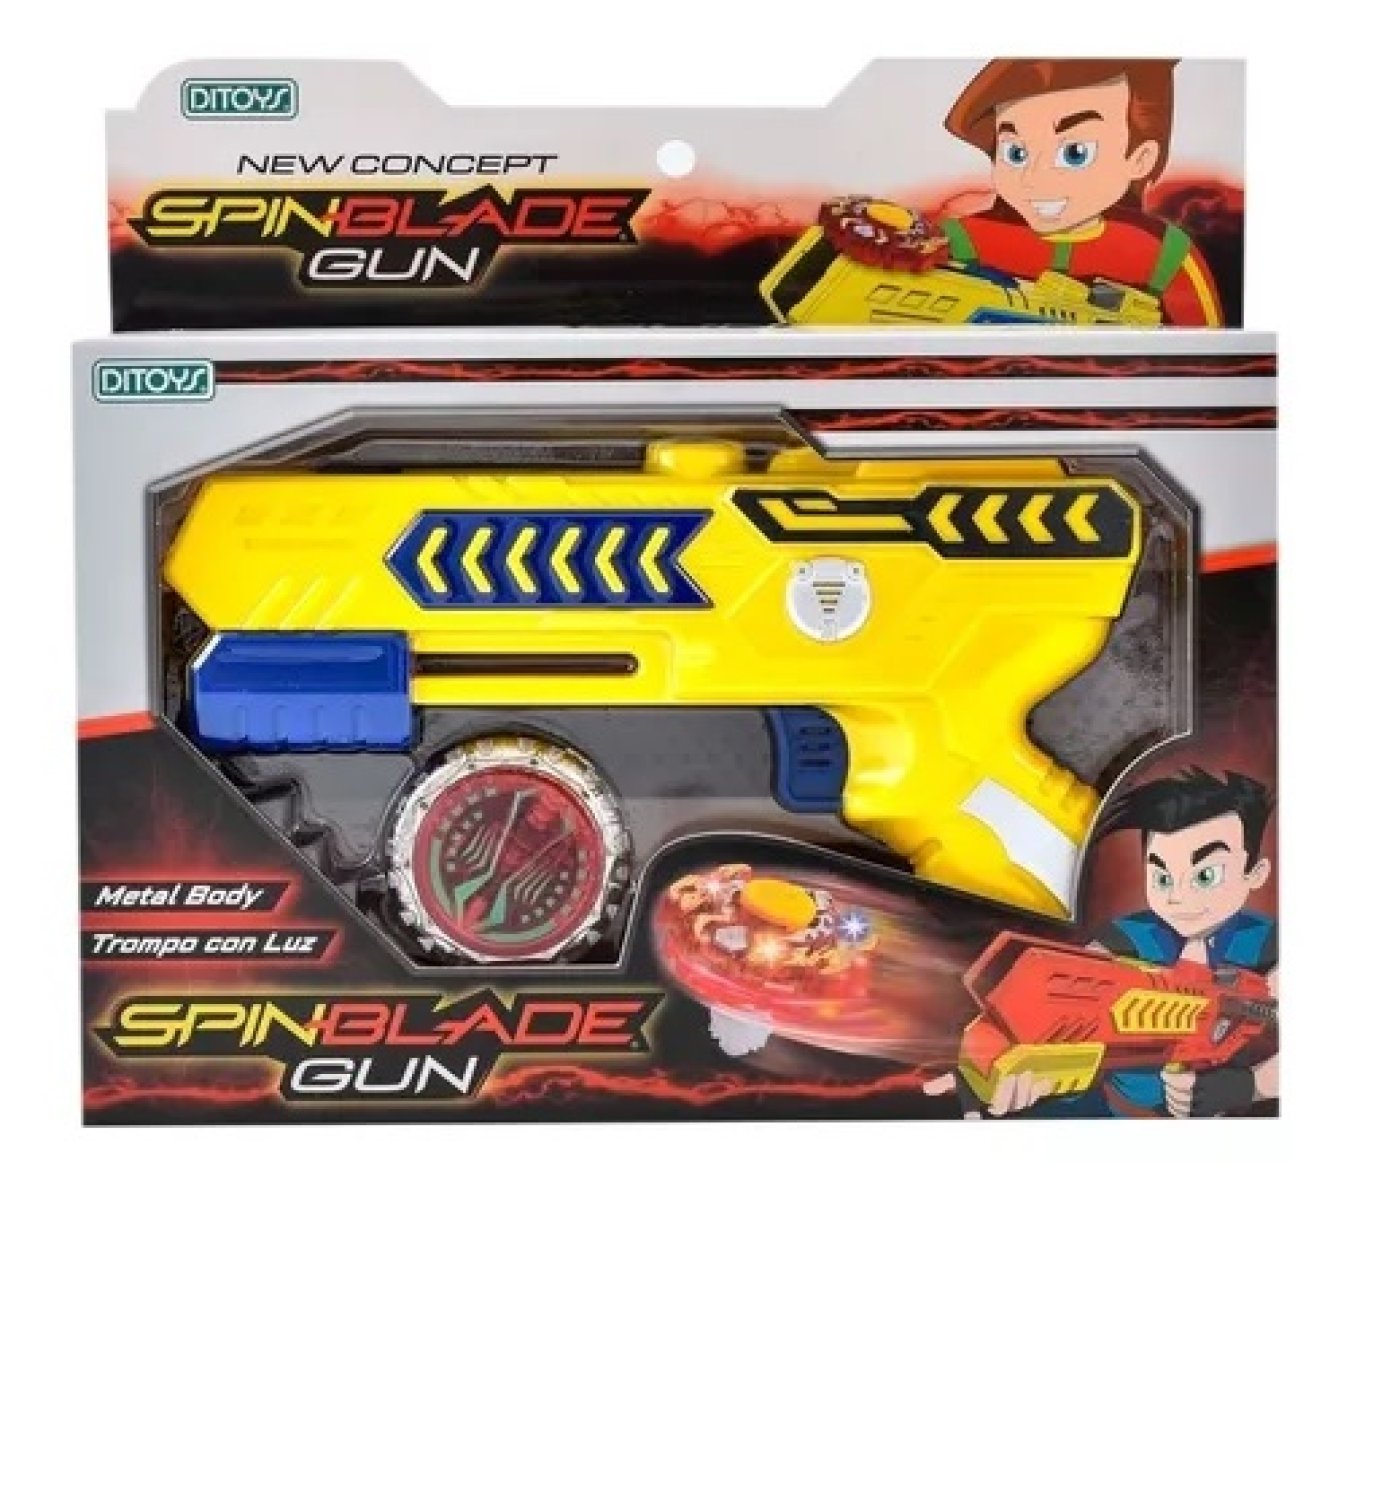 Pistola Lanza Trompo Spin Blade Gun Con Luz Ditoys